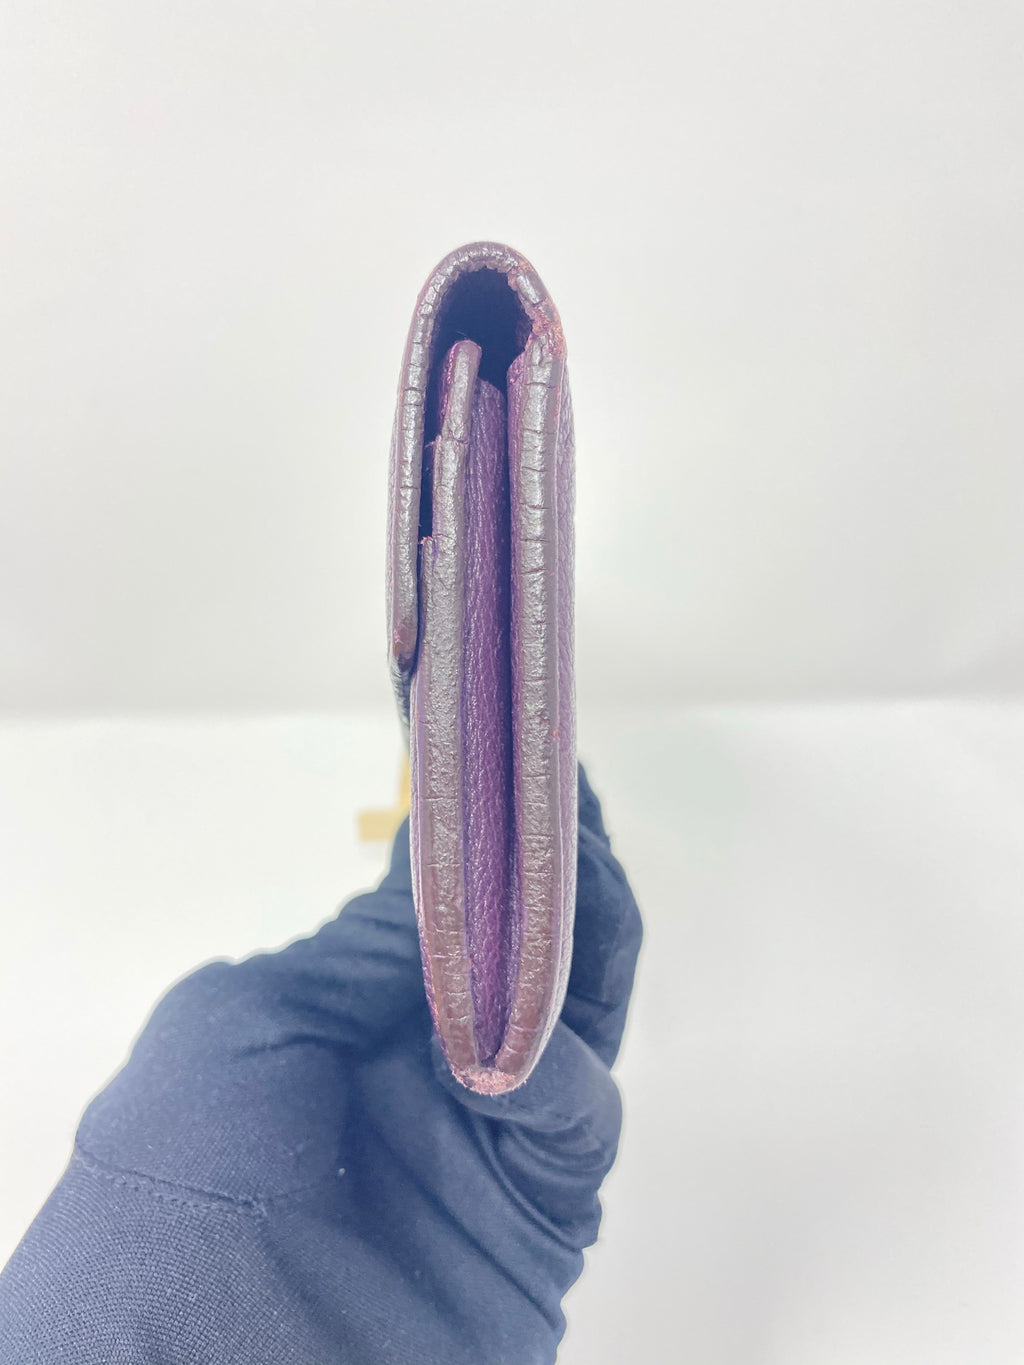 Louis Vuitton M82173 Clémence Wallet , Purple, One Size